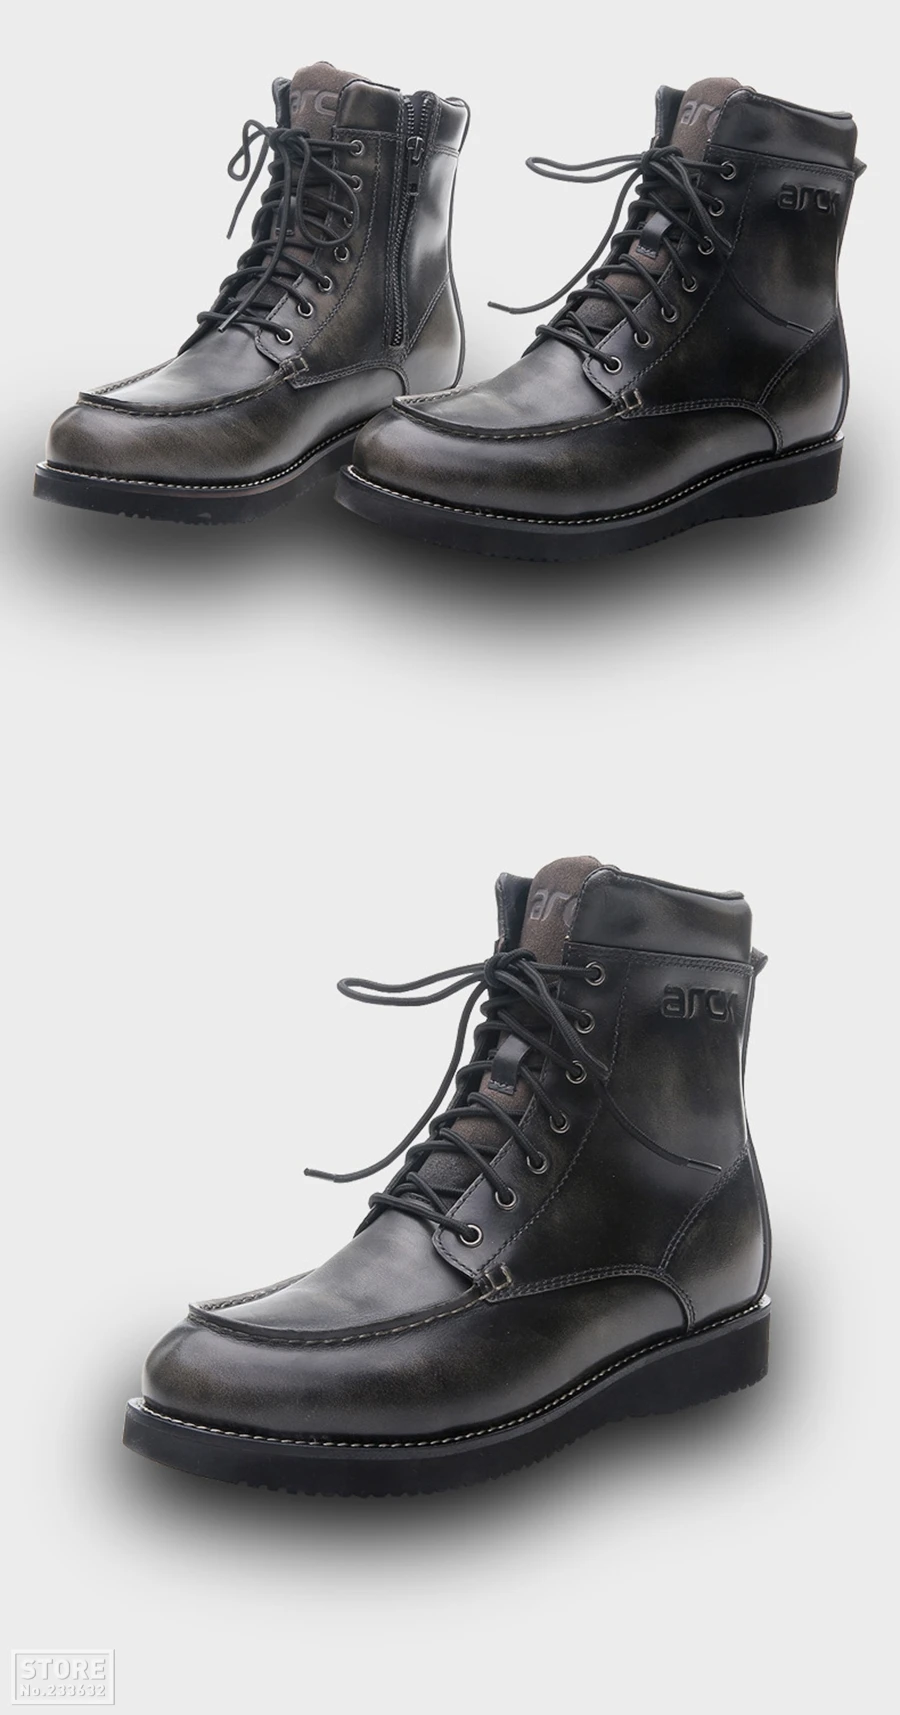 ARCX/мужские мотоциклетные ботинки; водонепроницаемые мотоциклетные ботинки; ботинки для мотокросса в винтажном стиле; обувь для путешествий на четыре сезона